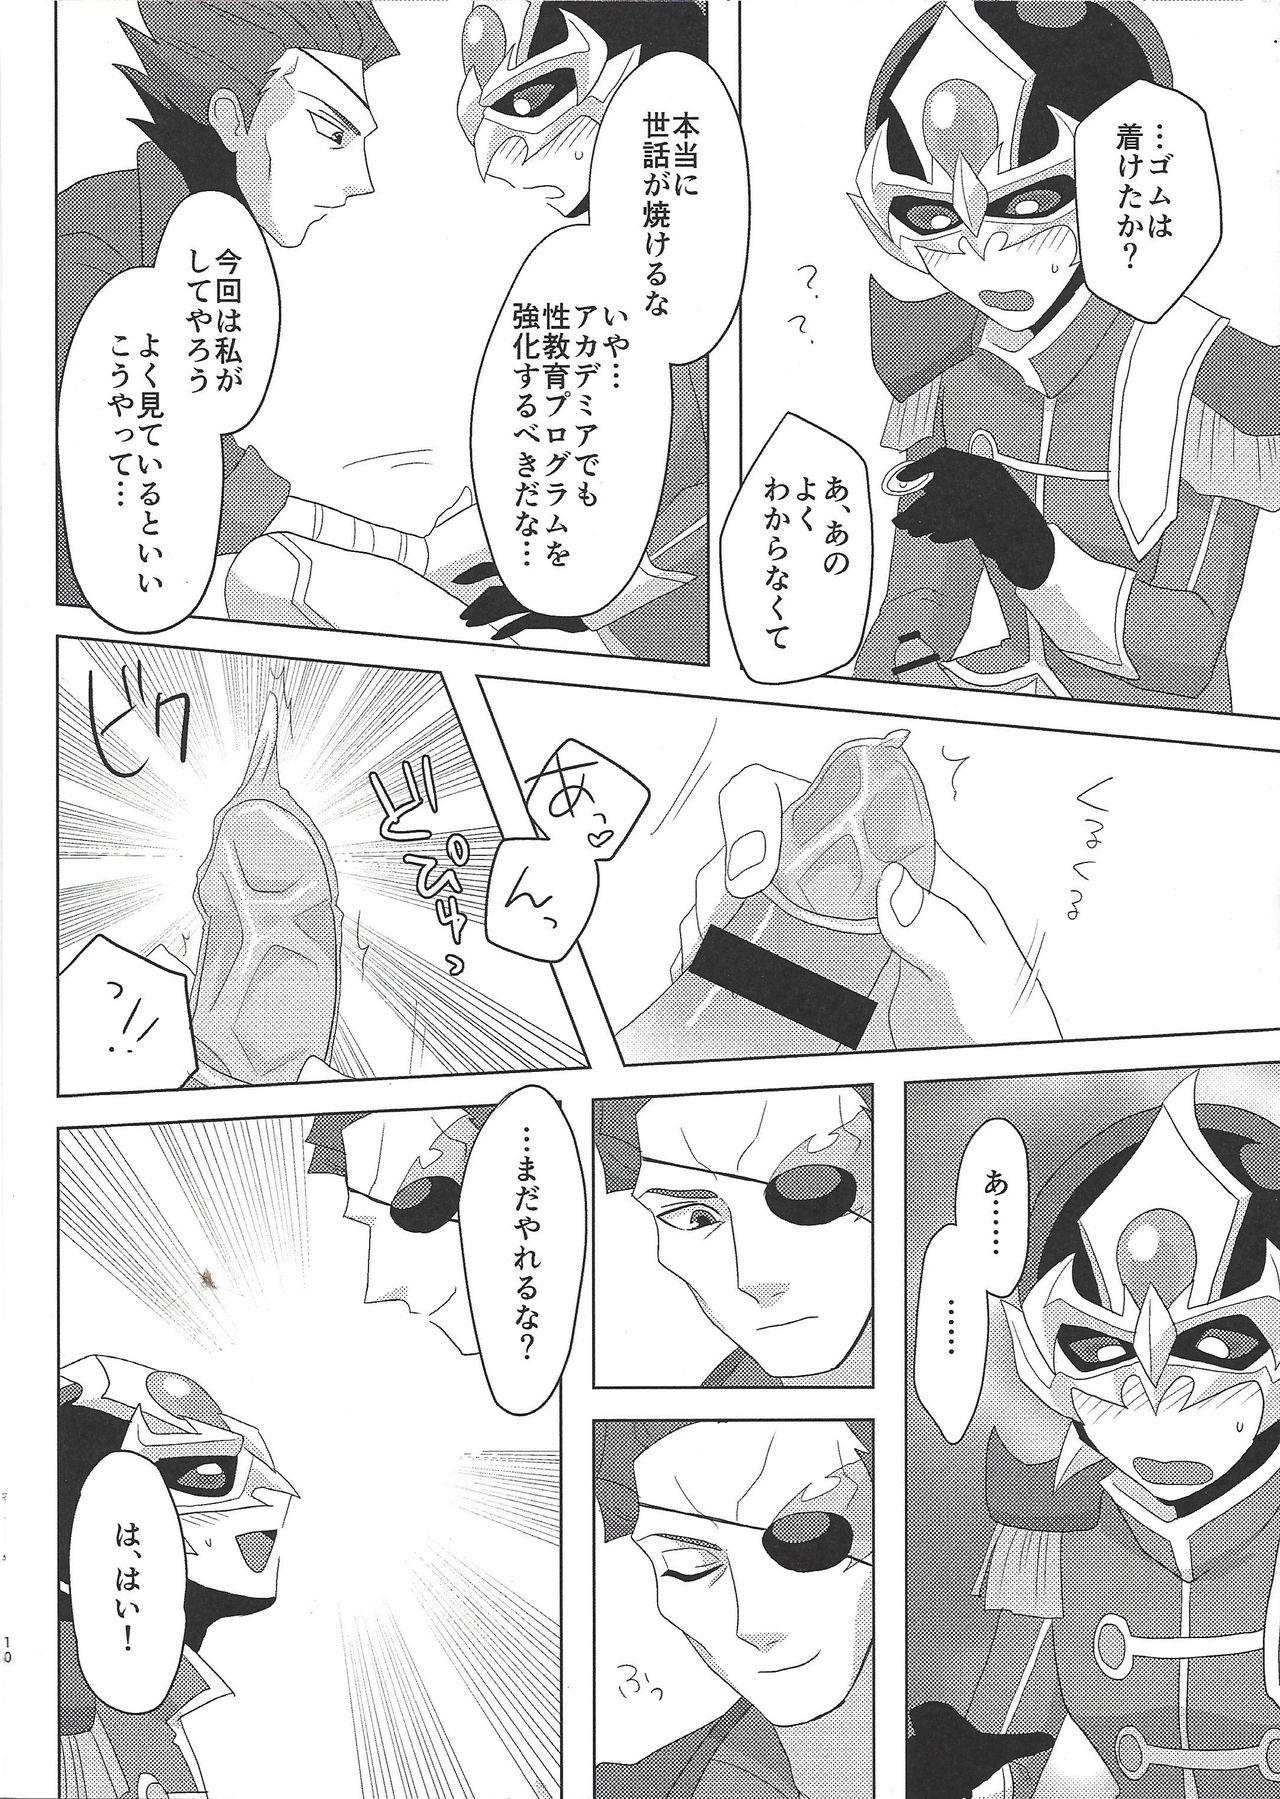 Tall Taichō! Kon'ya mo onegai shimasu! - Yu-gi-oh arc-v Ginger - Page 9